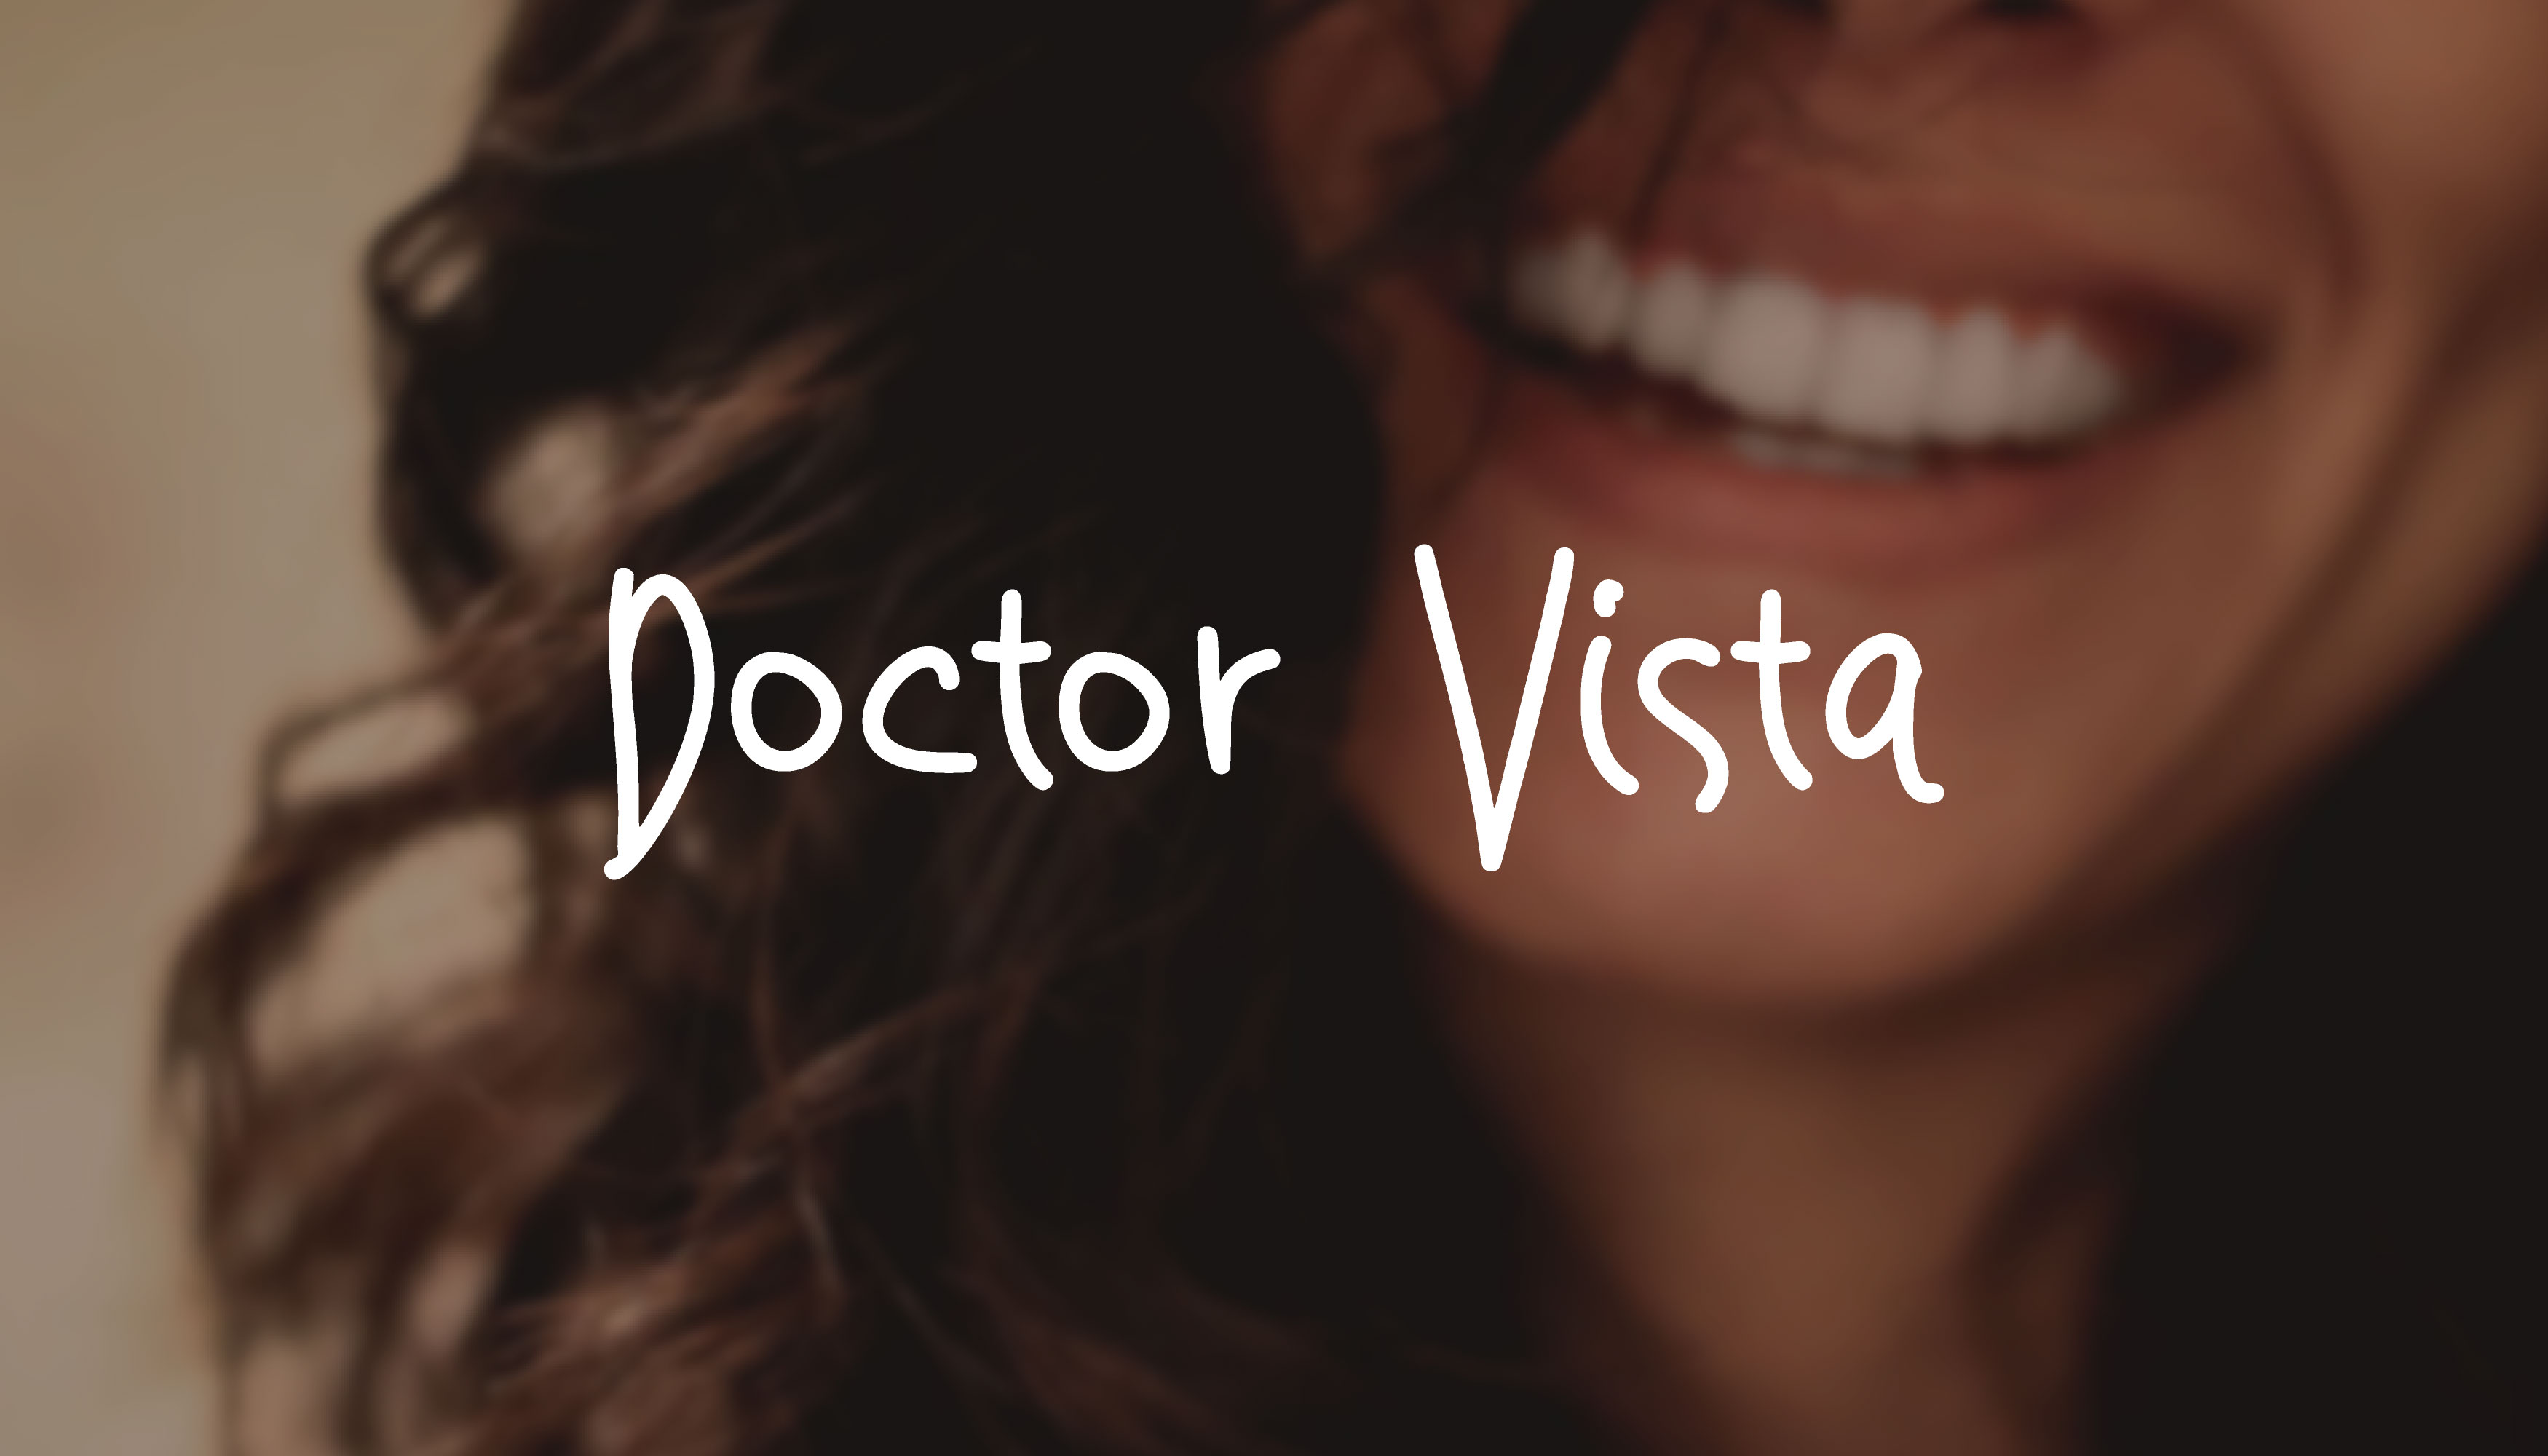 Doctor Vista font